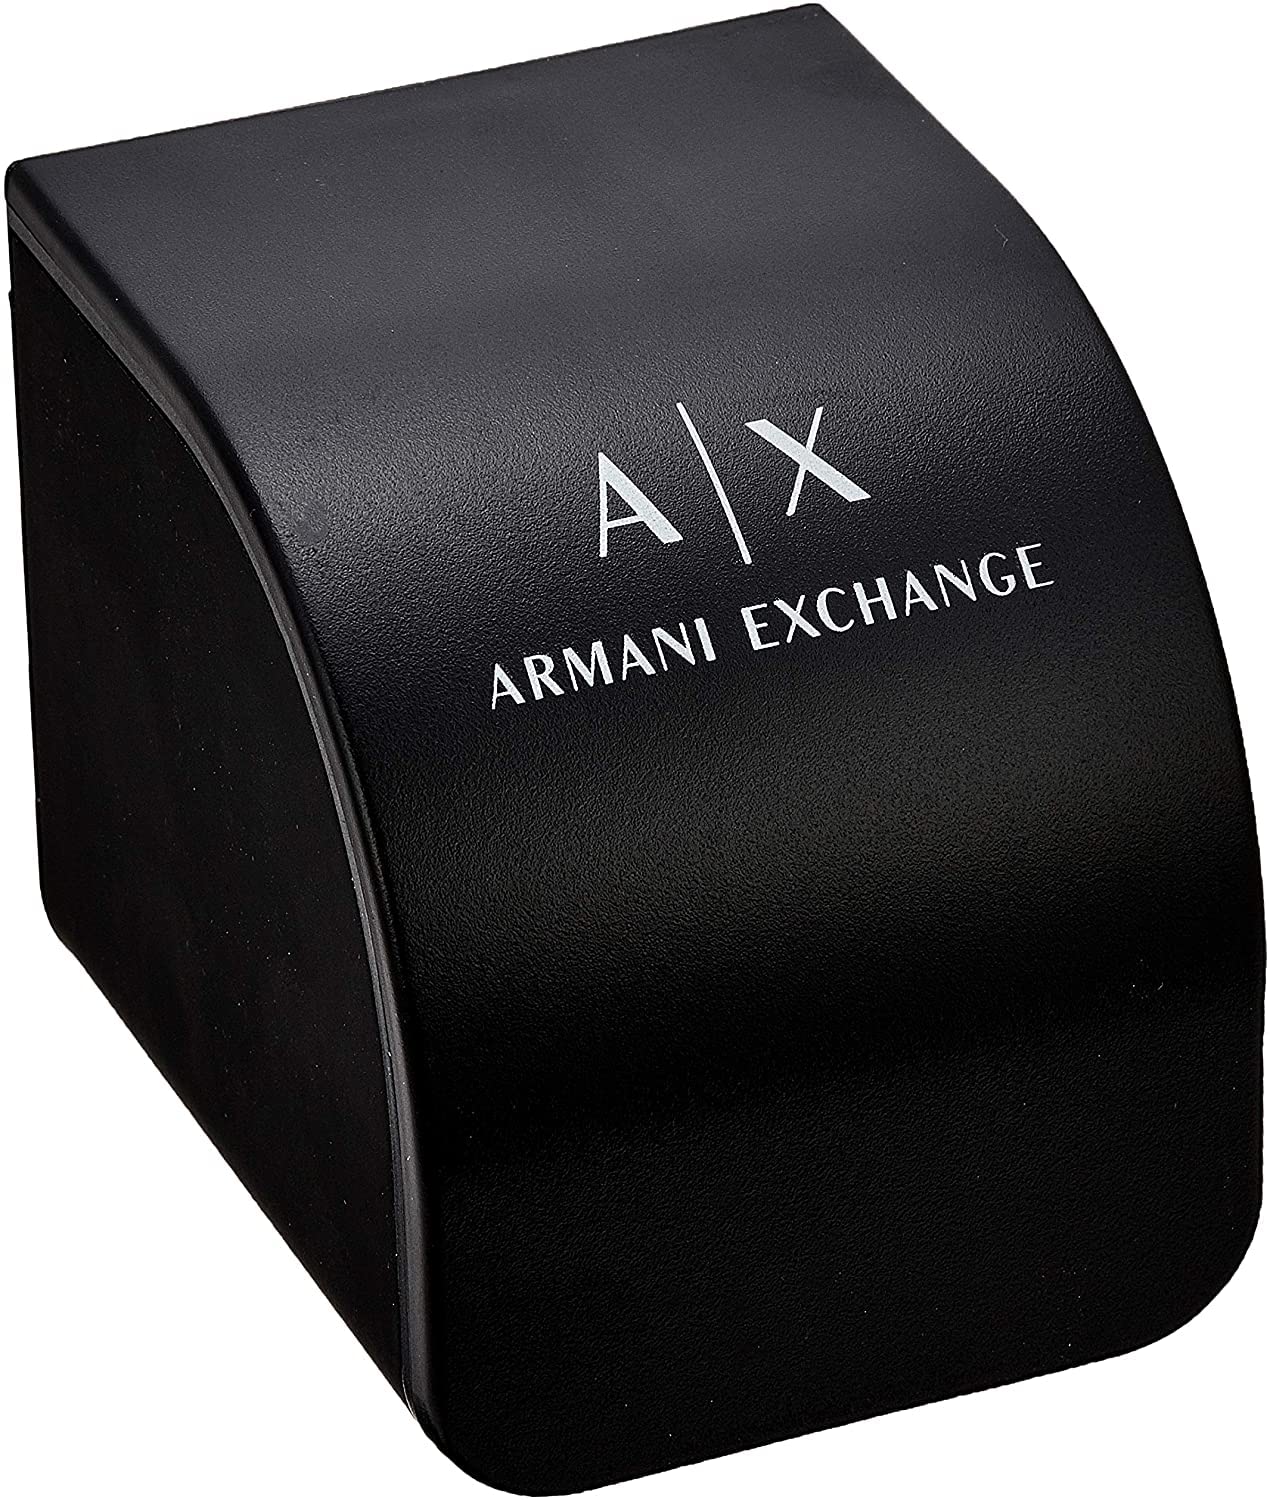 Armani Exchange Edelstahl-Damenuhr mit drei Zeigern, 36 mm Gehäusegröße, Edelstahl-Mesh-Armband